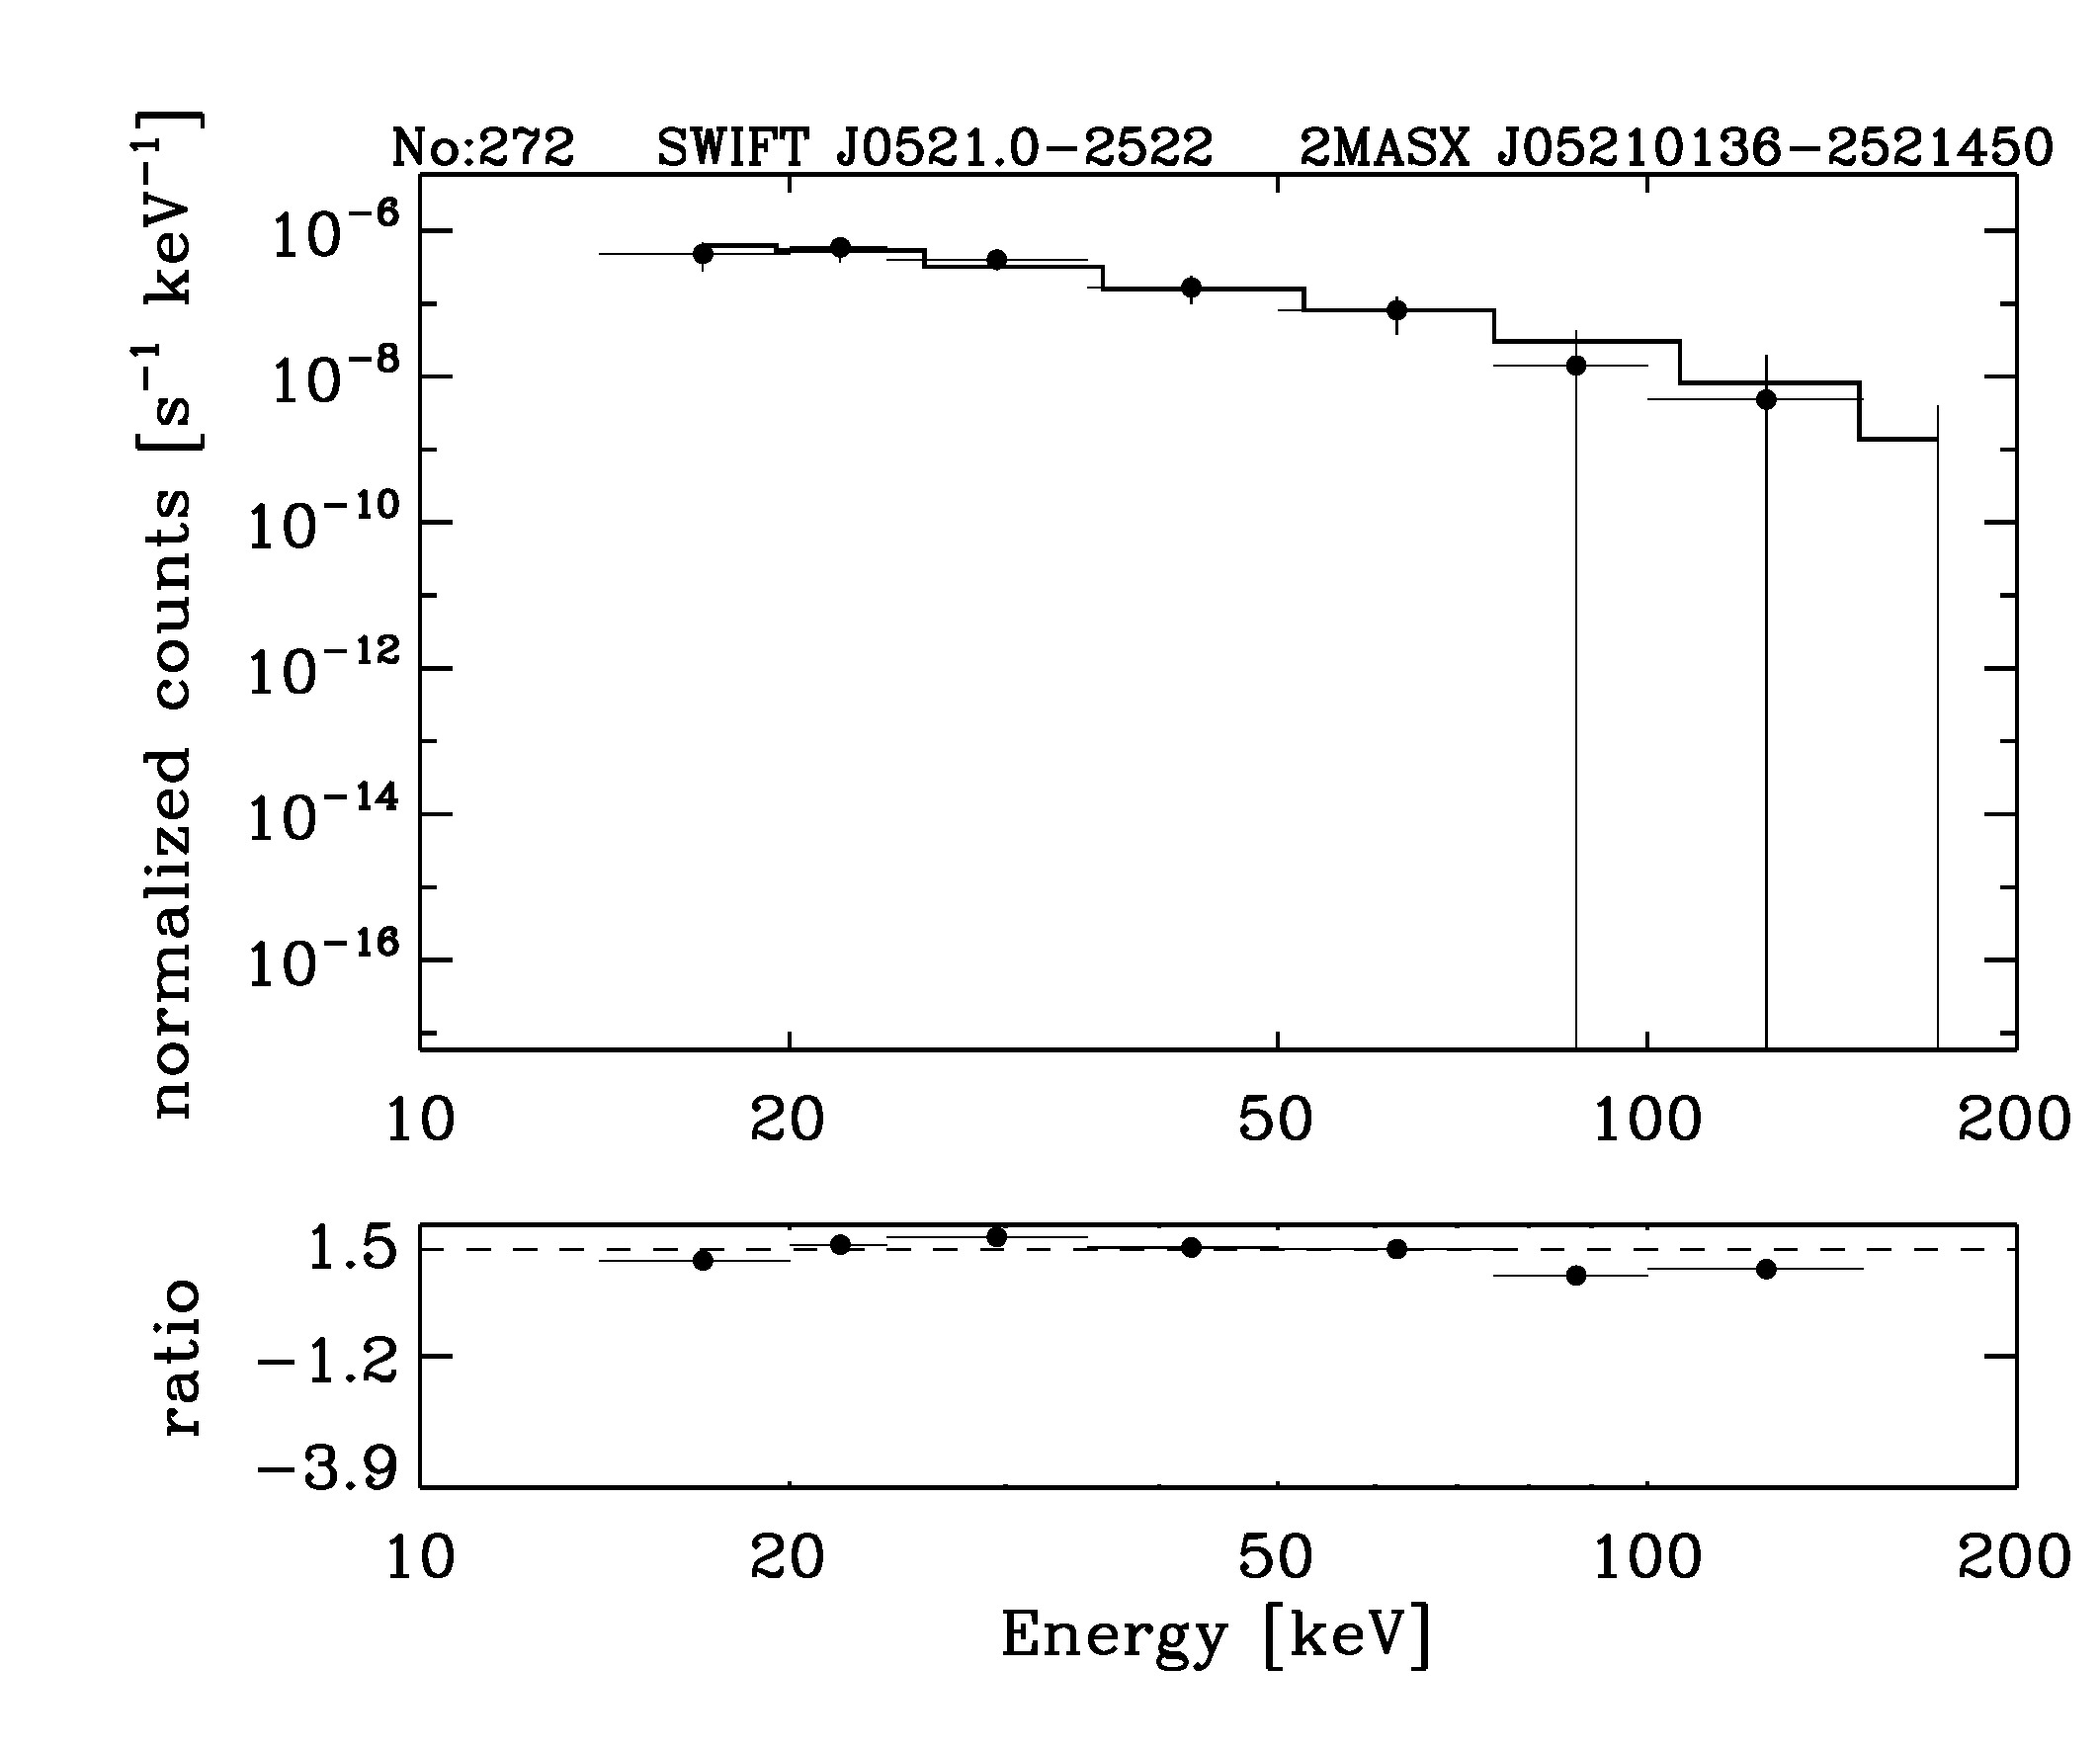 BAT Spectrum for SWIFT J0521.0-2522